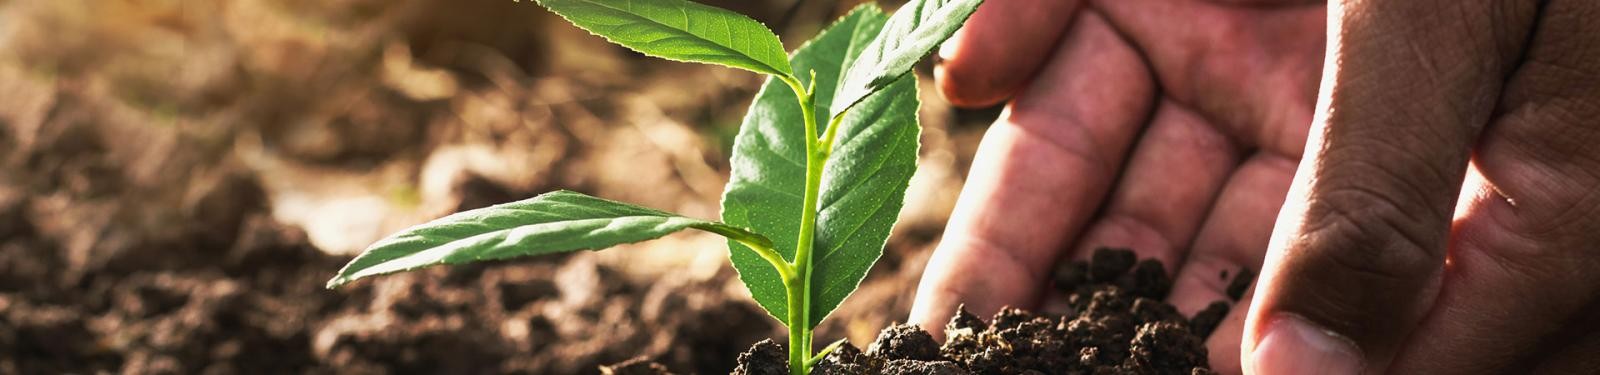 Ein Steckling wird von zwei Händen in die Erde eingepflanzt.